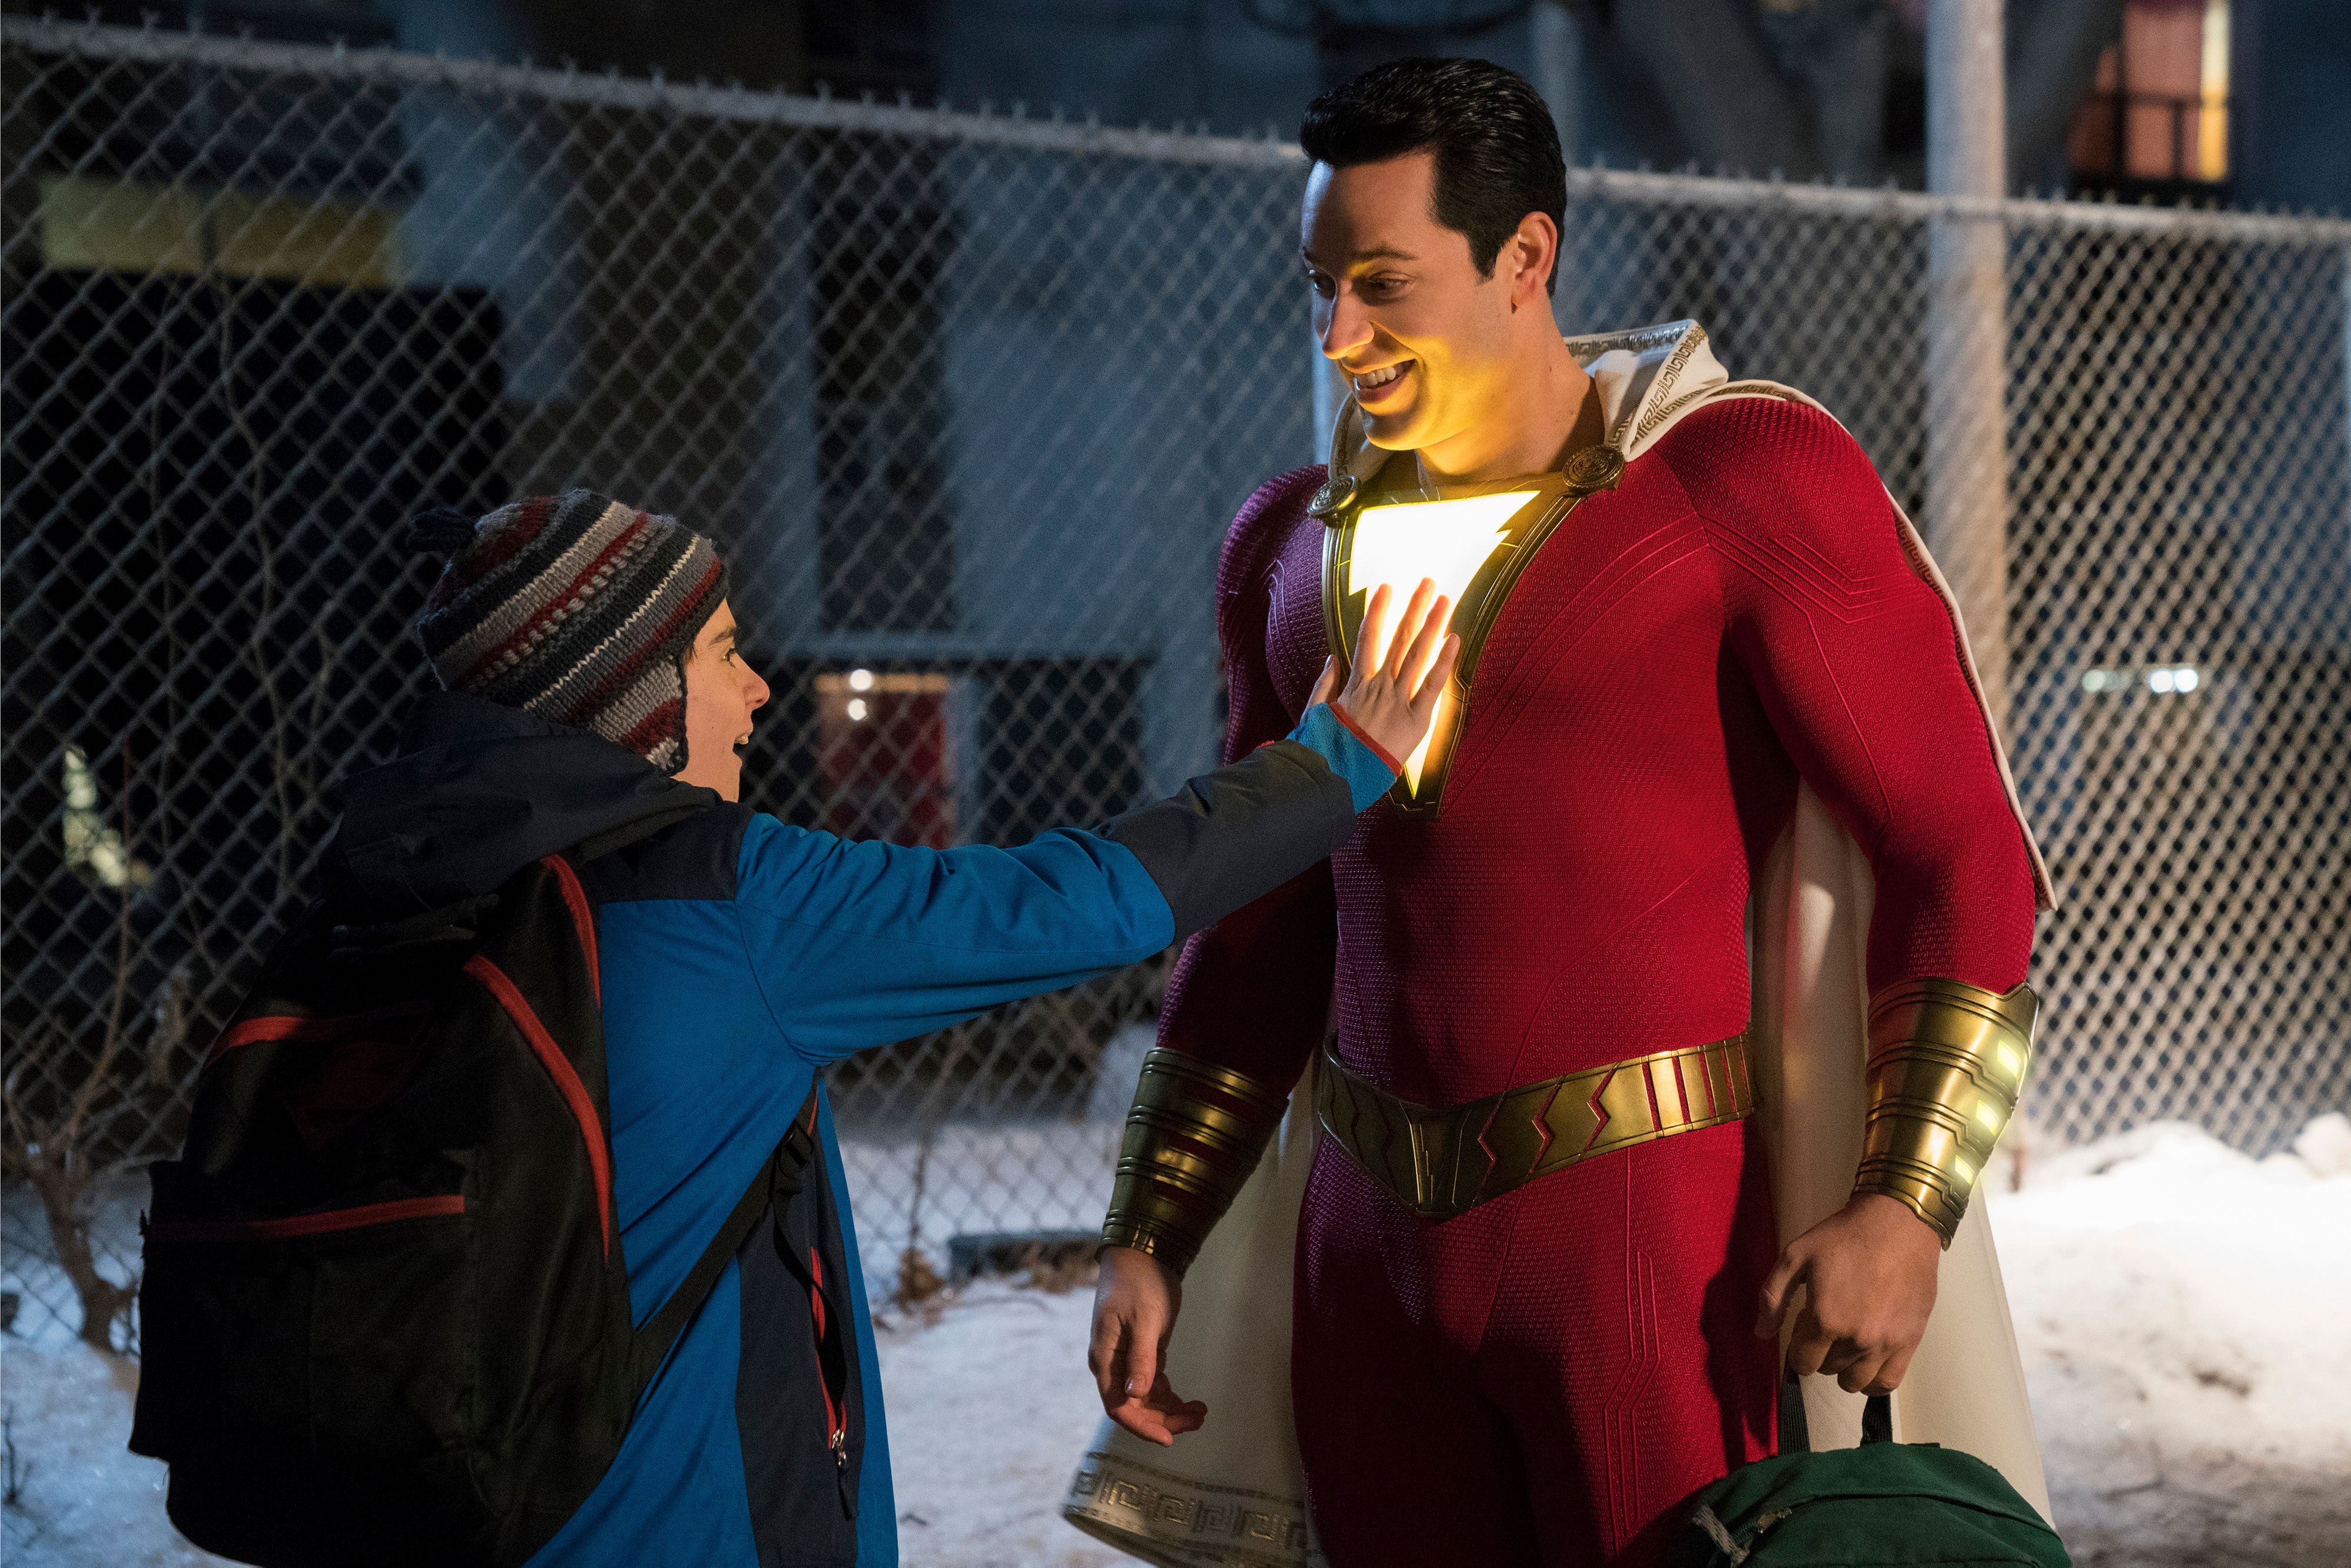 Tras su participación con Marvel, el actor Zachary Levi será el rostro de una estrella de DC. (Foto Prensa Libre: Warner Bros.)